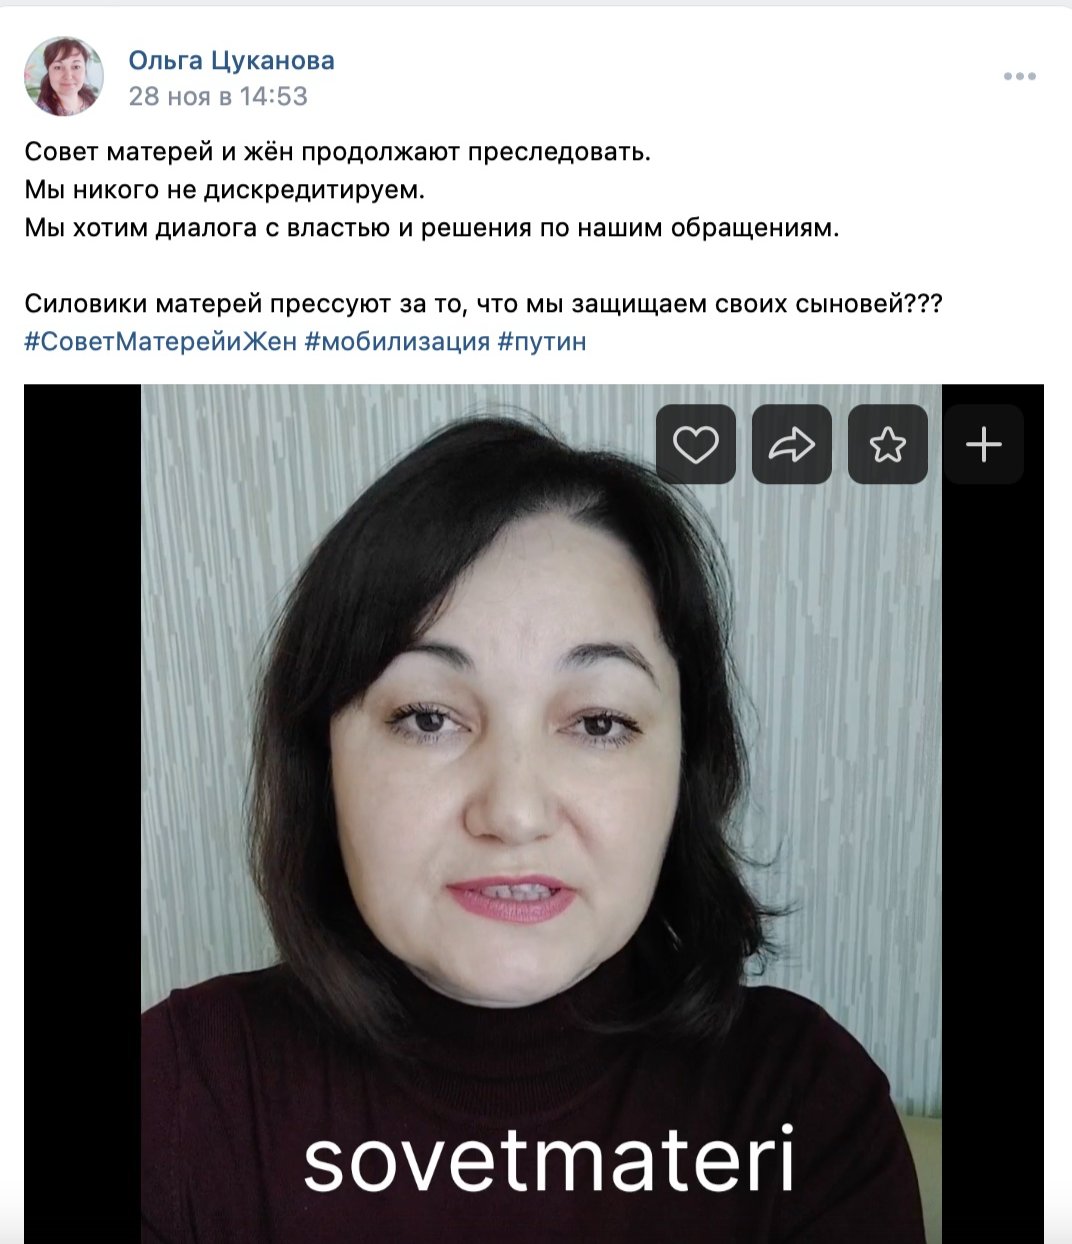 Публикация Ольги Цукановой о нападении. Фото: скрин  видео